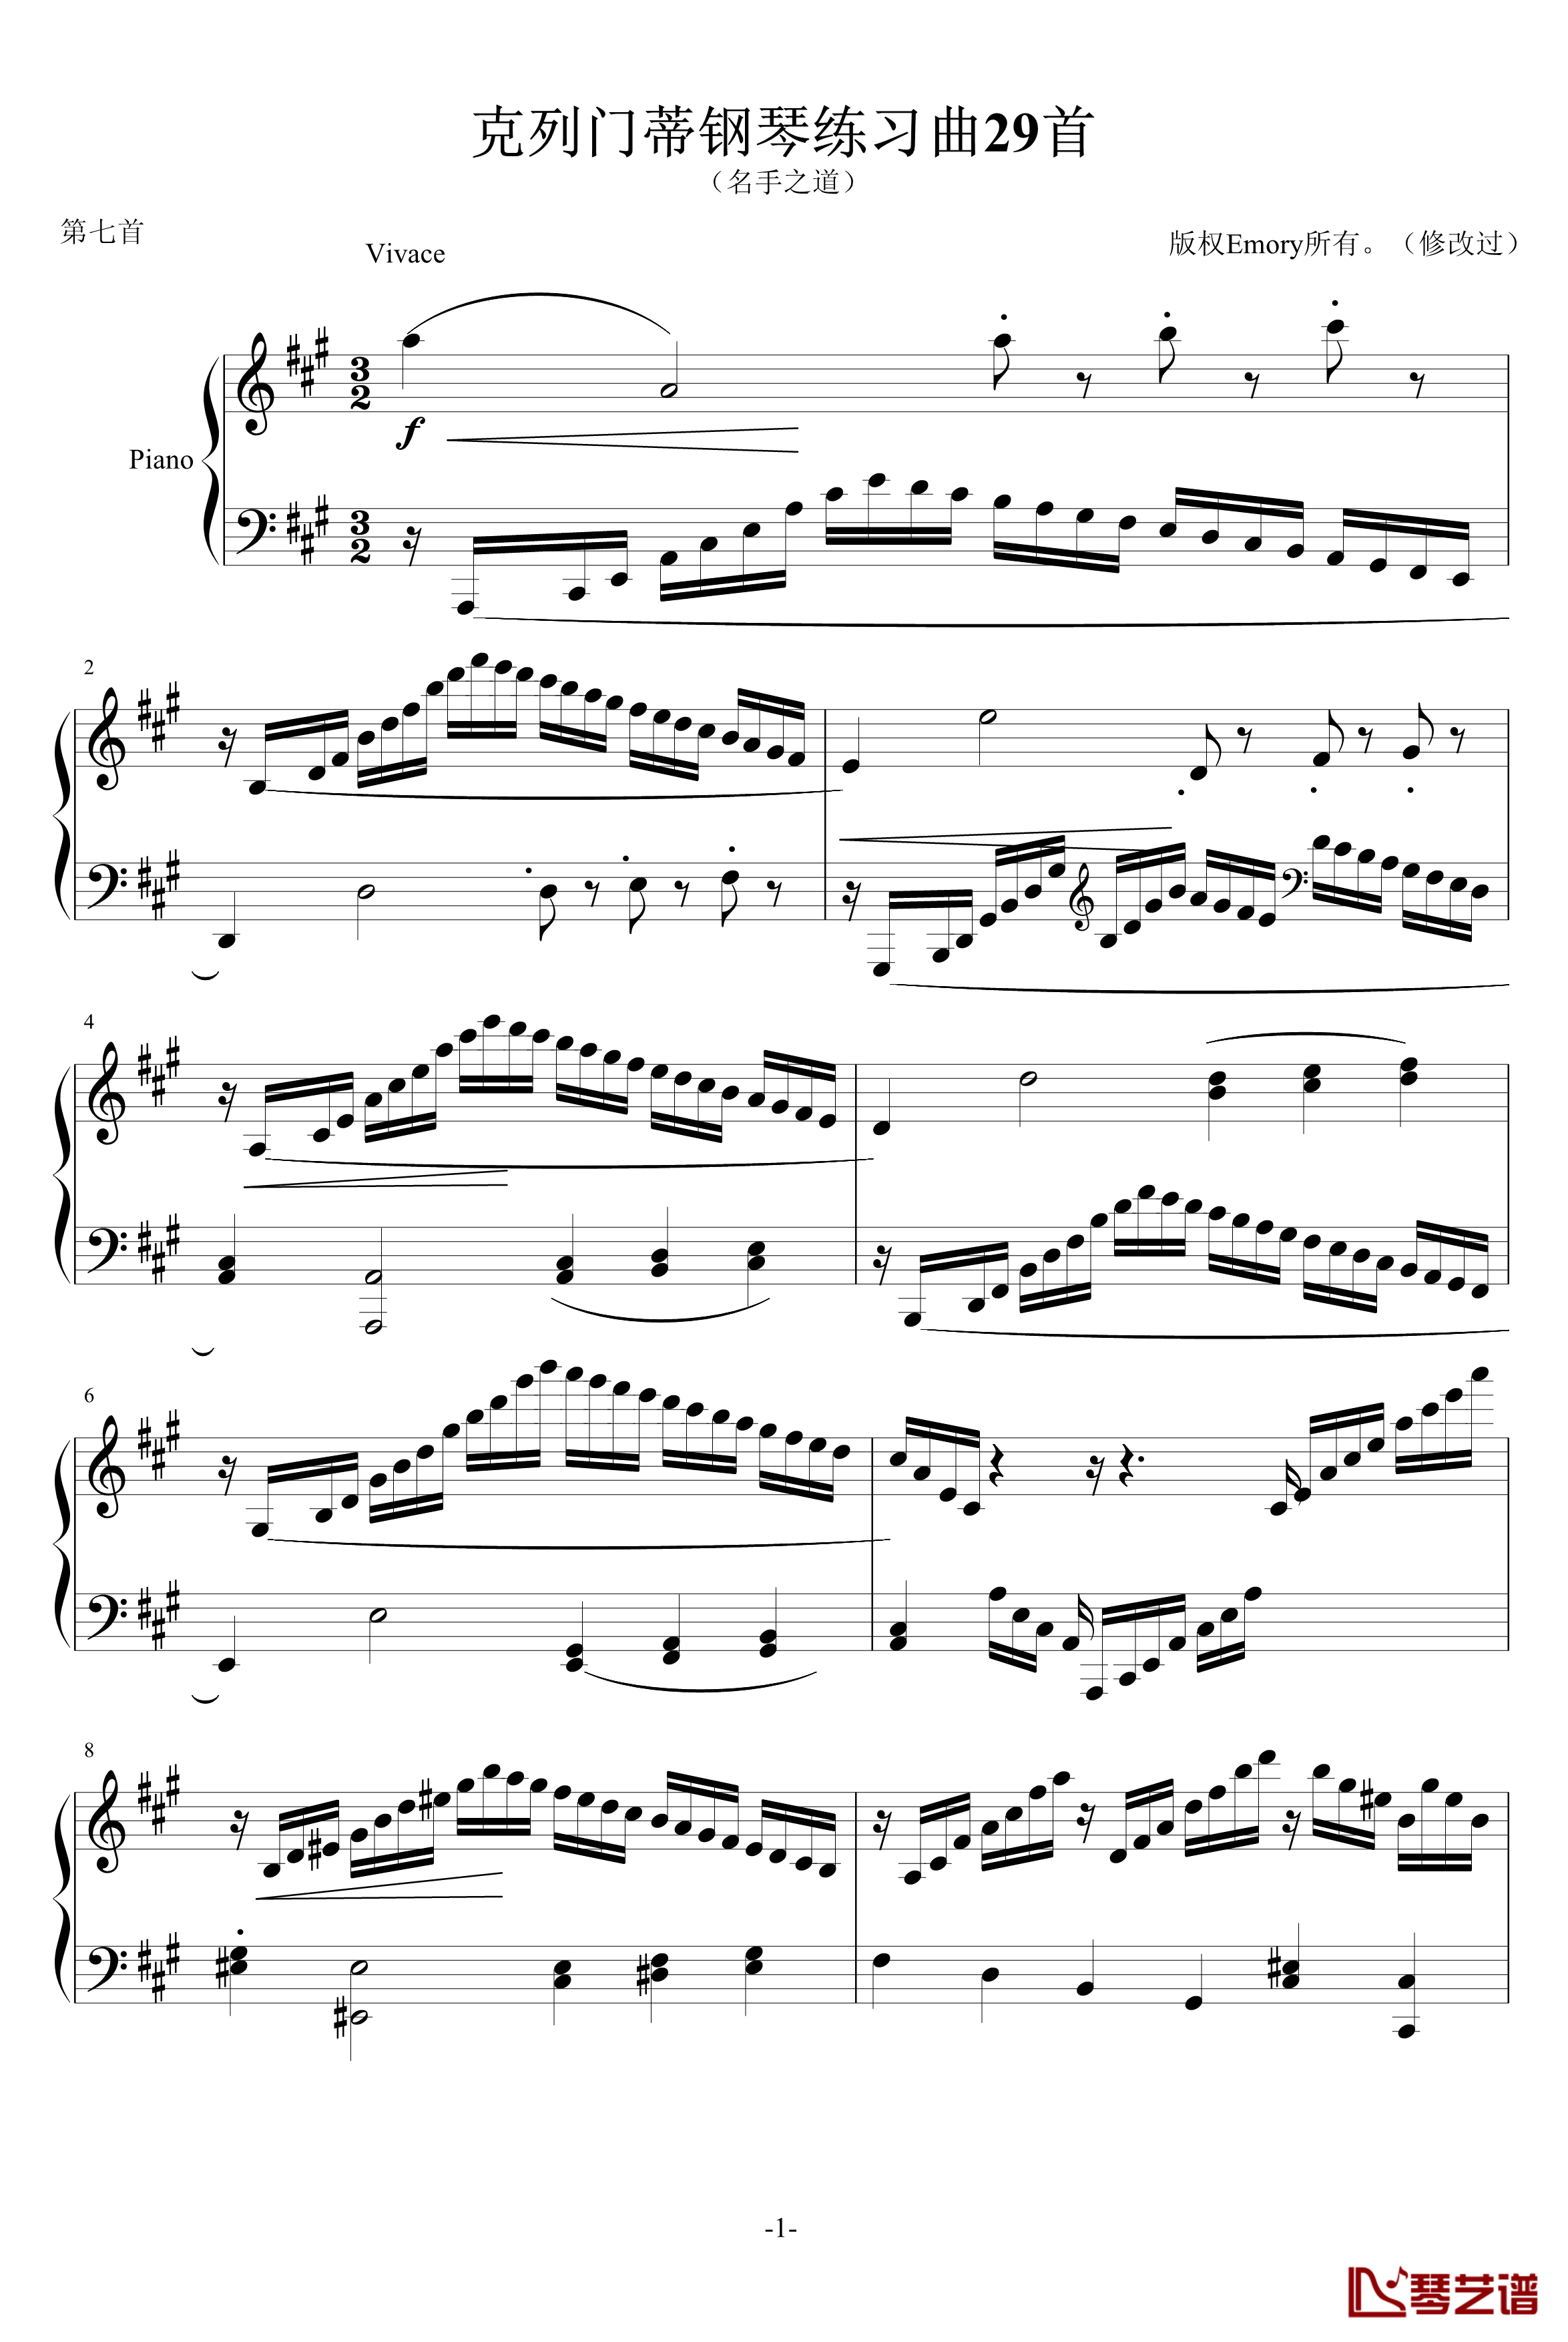 克列门蒂练习曲之第7首钢琴谱-克来门蒂1